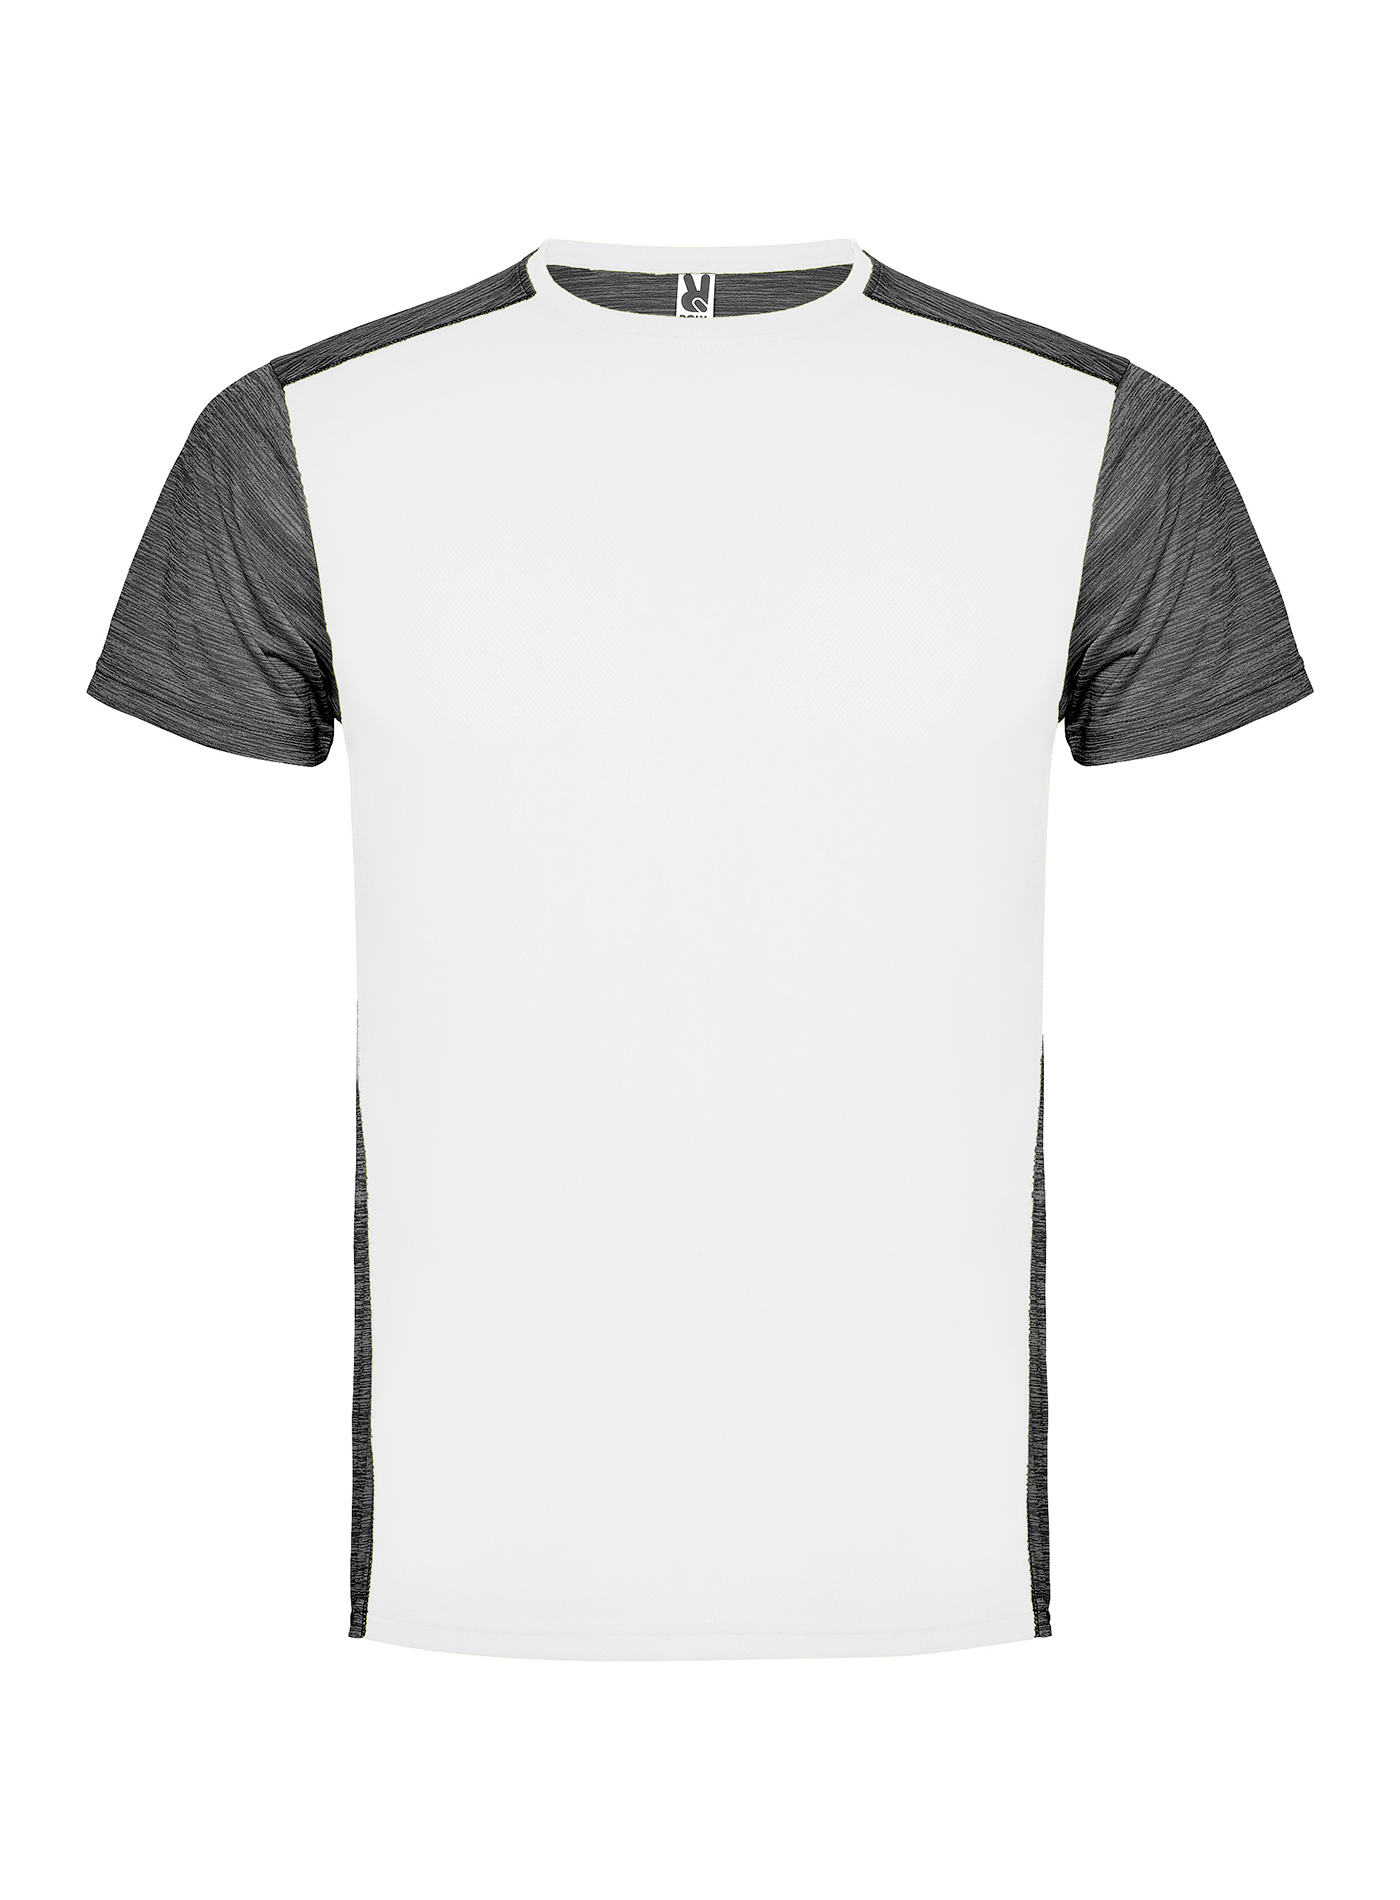 Pánské/Dětské sportovní tričko Roly Zolder - Bílá a tmavě šedý melír XXL